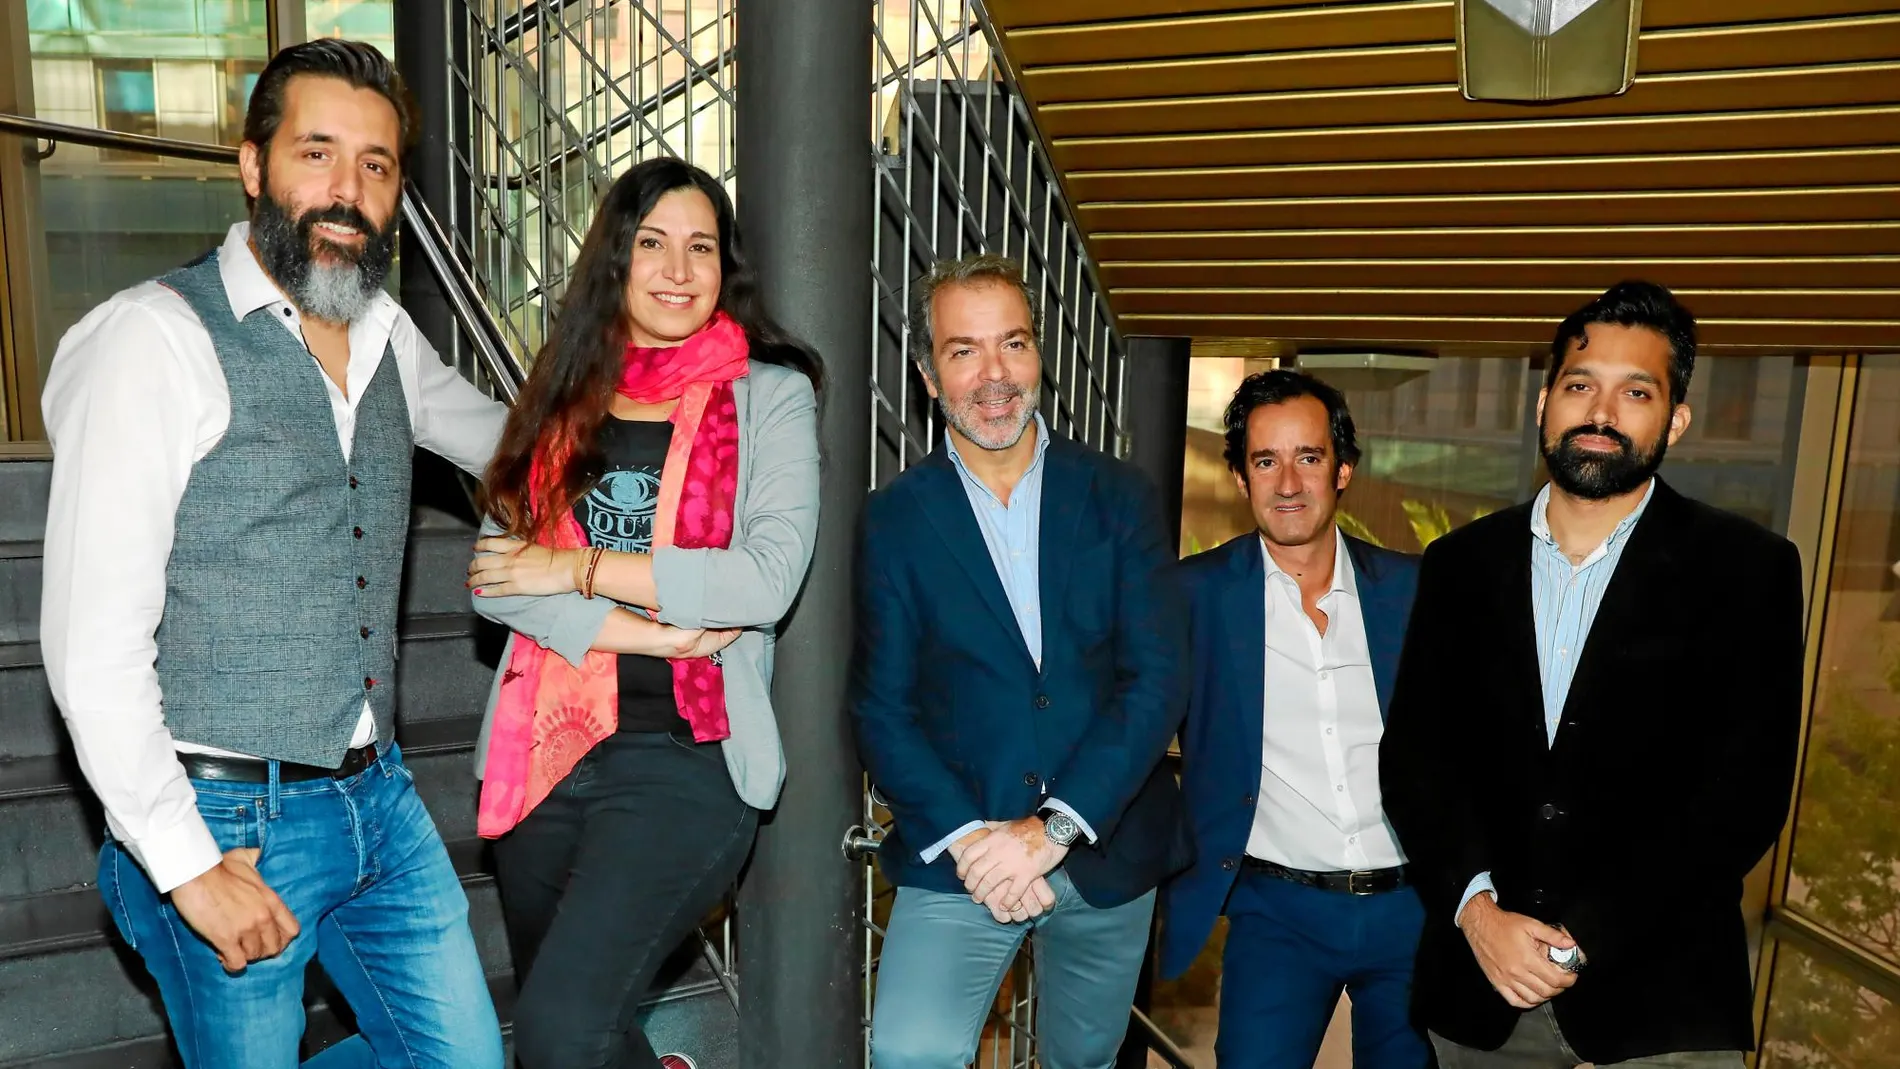 De izquierda a derecha, Luis Torres, Tatiana Delgado, José María Moreno, Asier Labarca y Borja Vaz